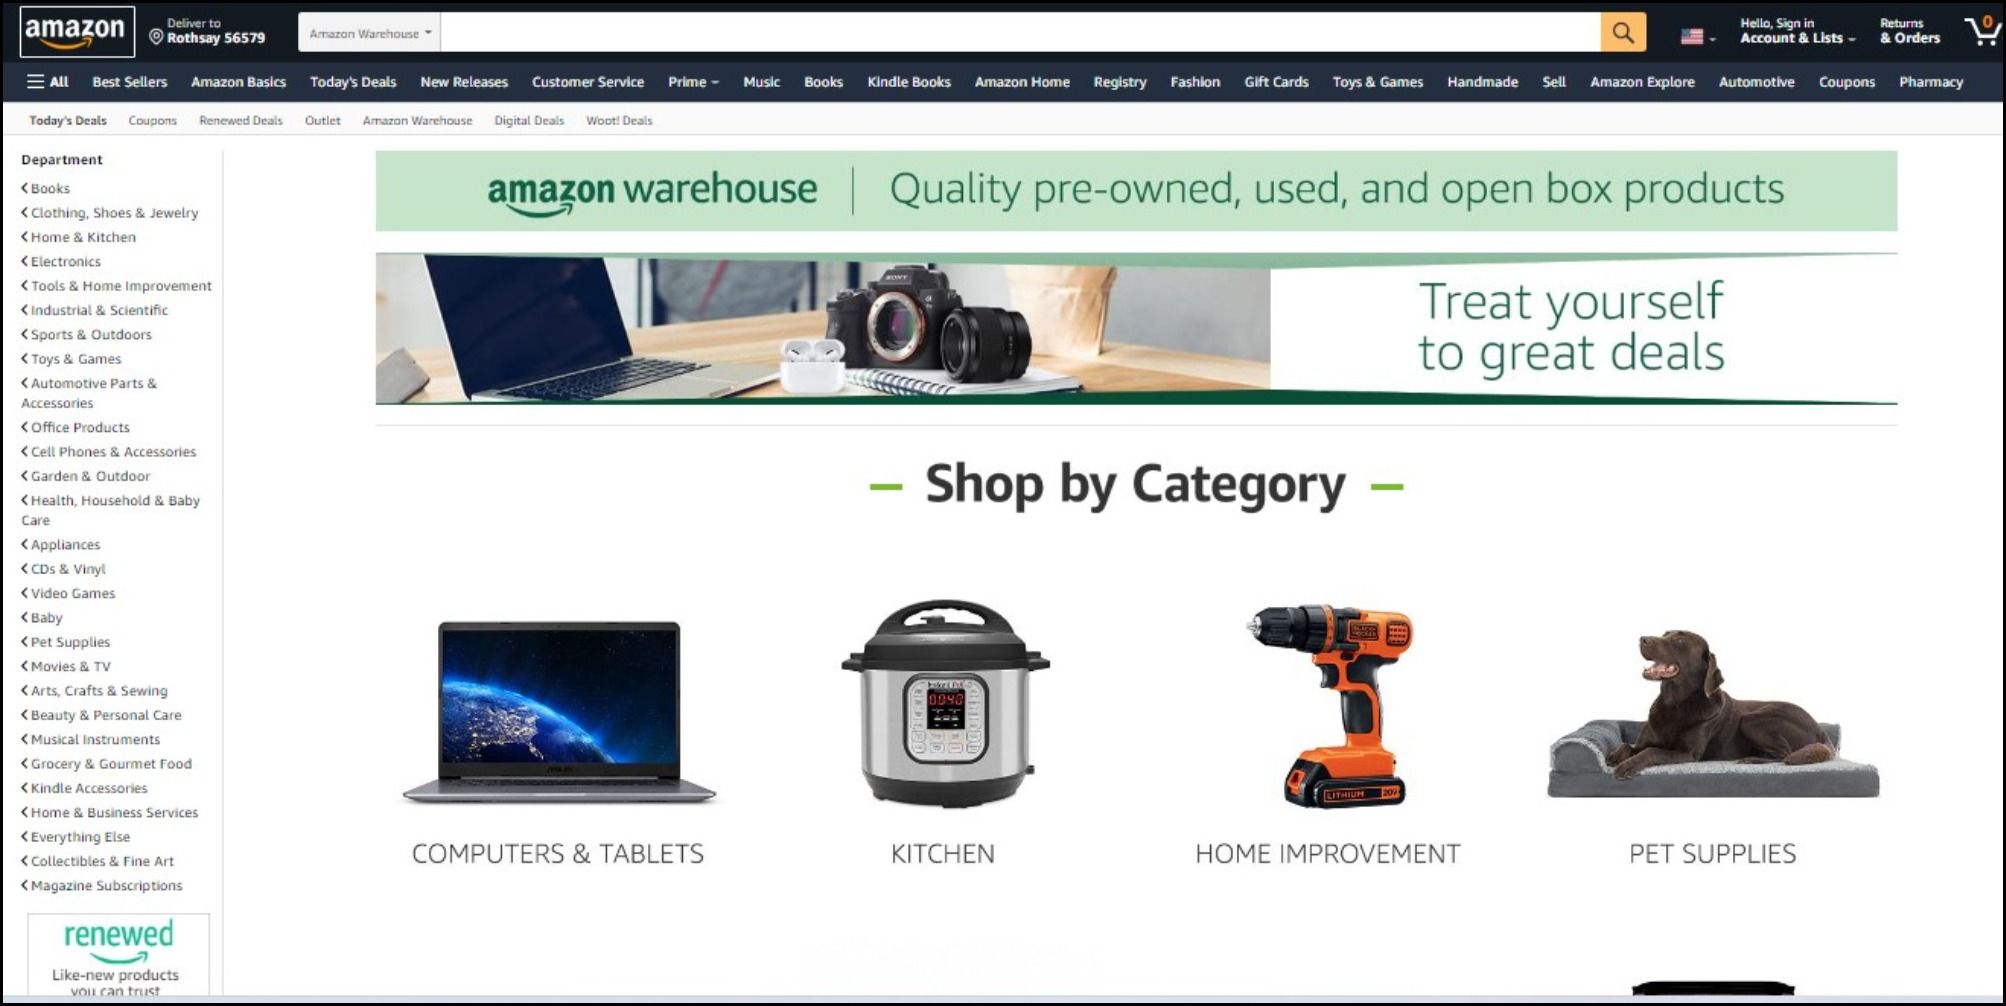 Deals on Amazon warehouse